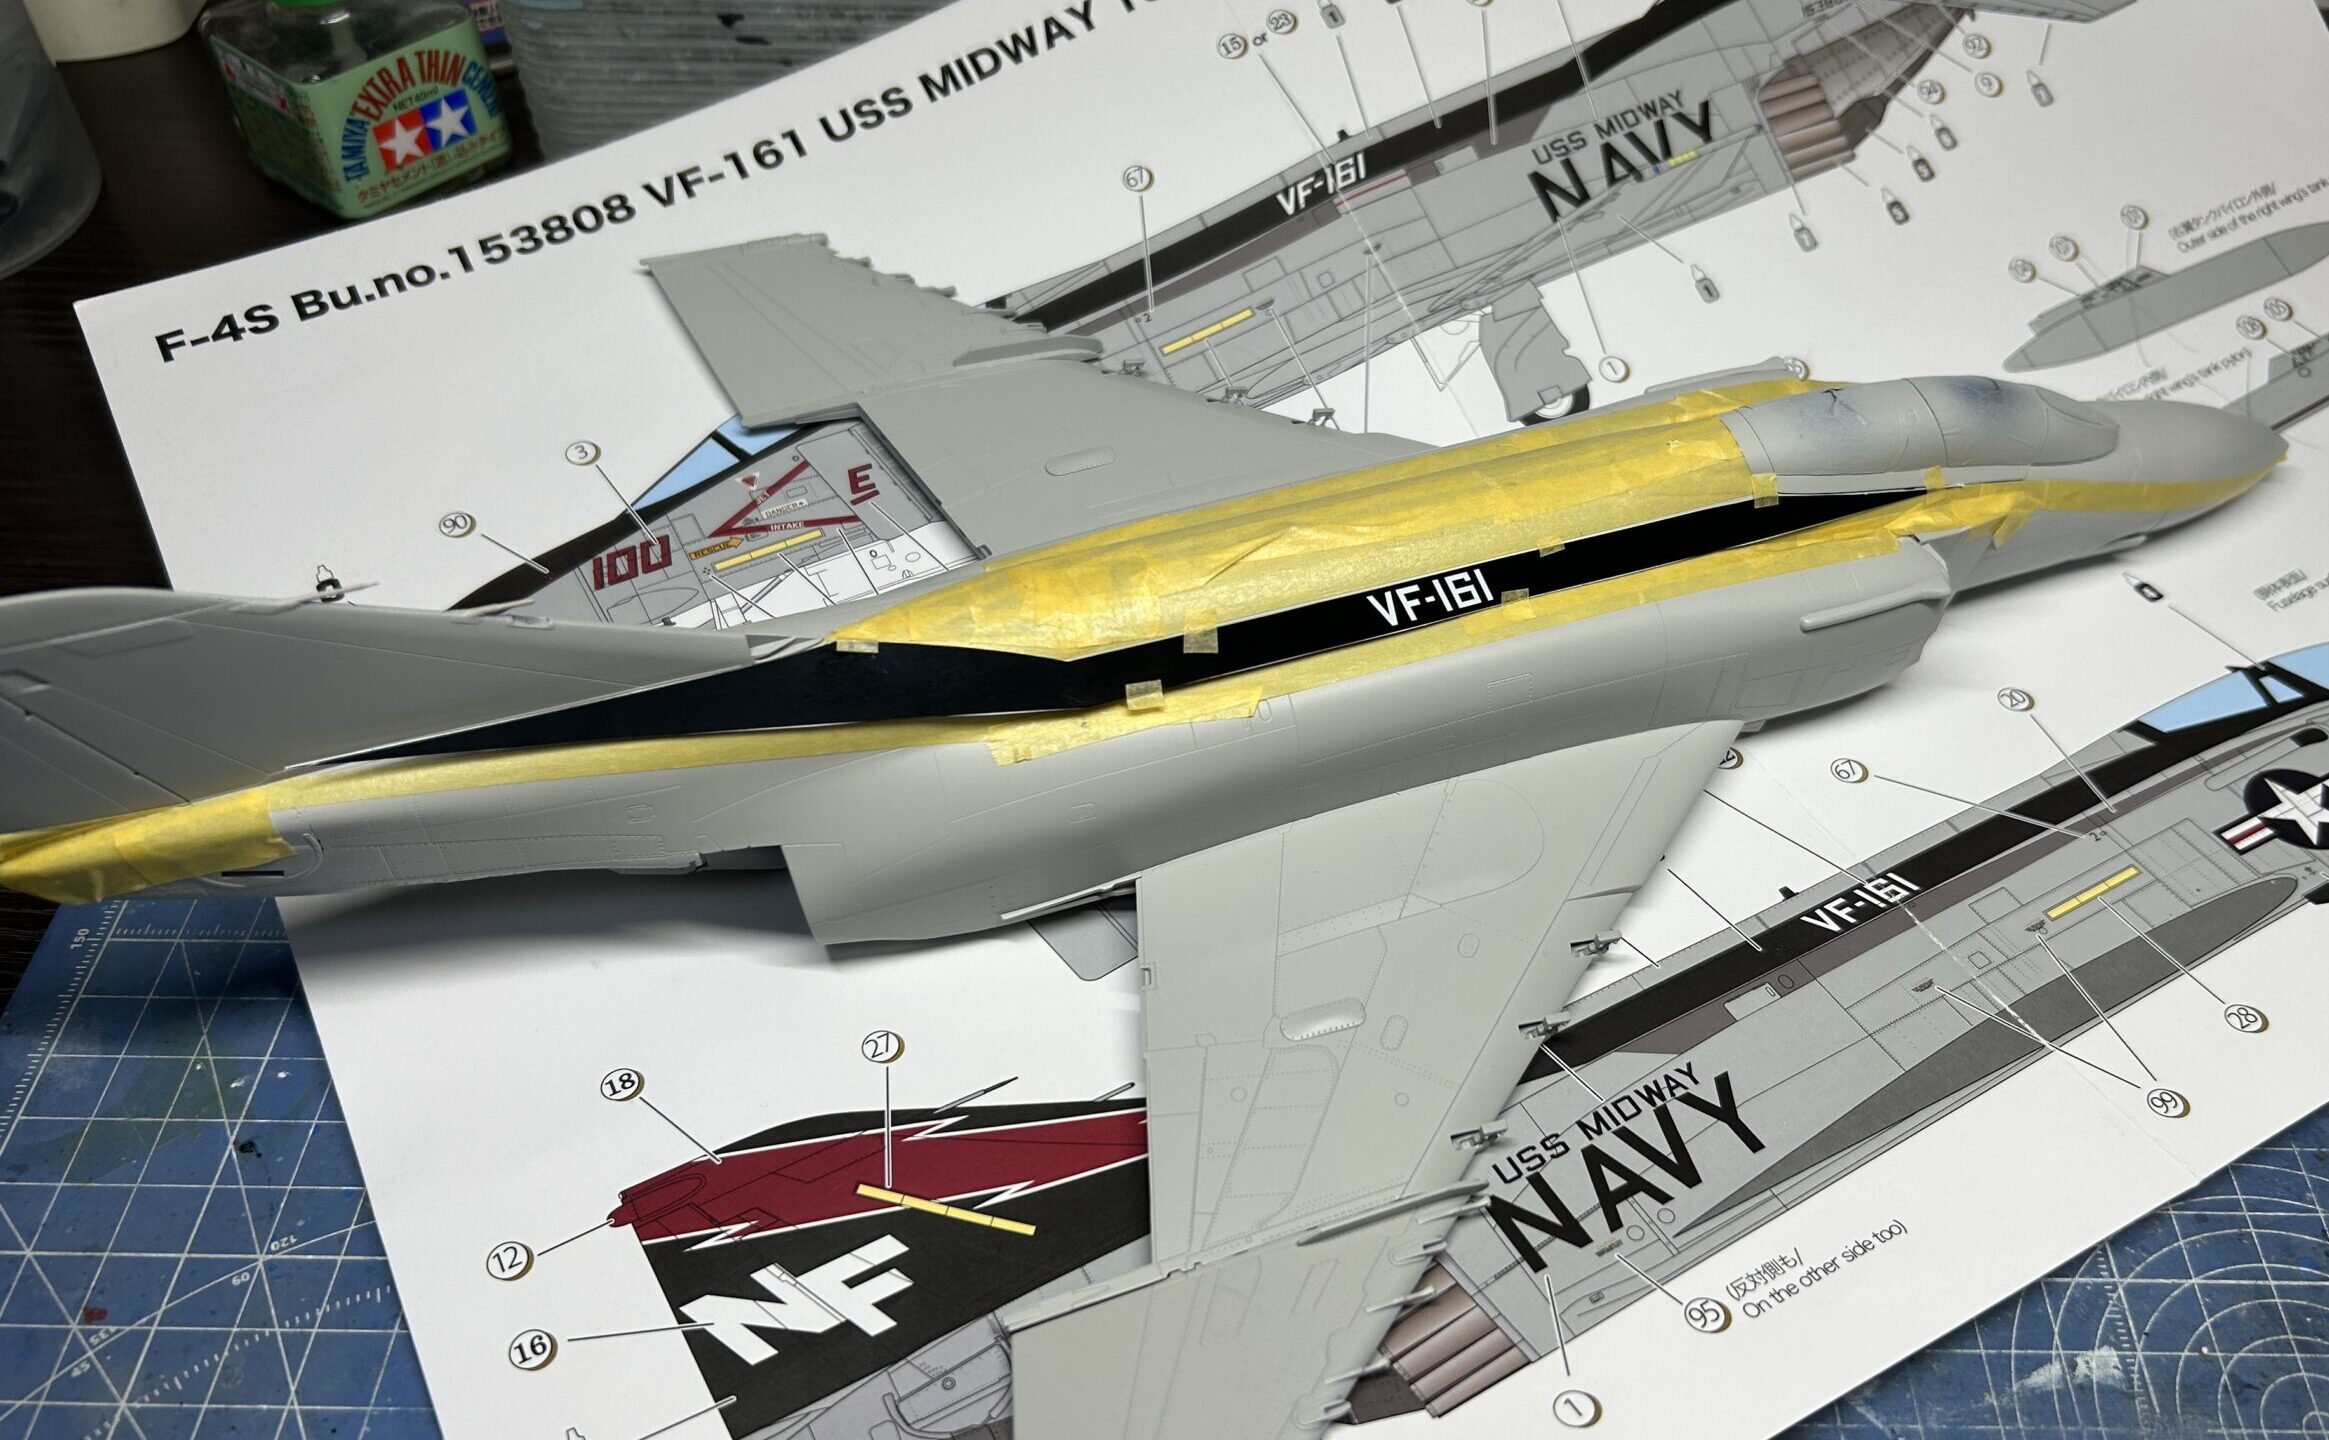 造形村 1/48 F-4S ファントムⅡ 製作記 | JUNSANのミニチュア航空博物館